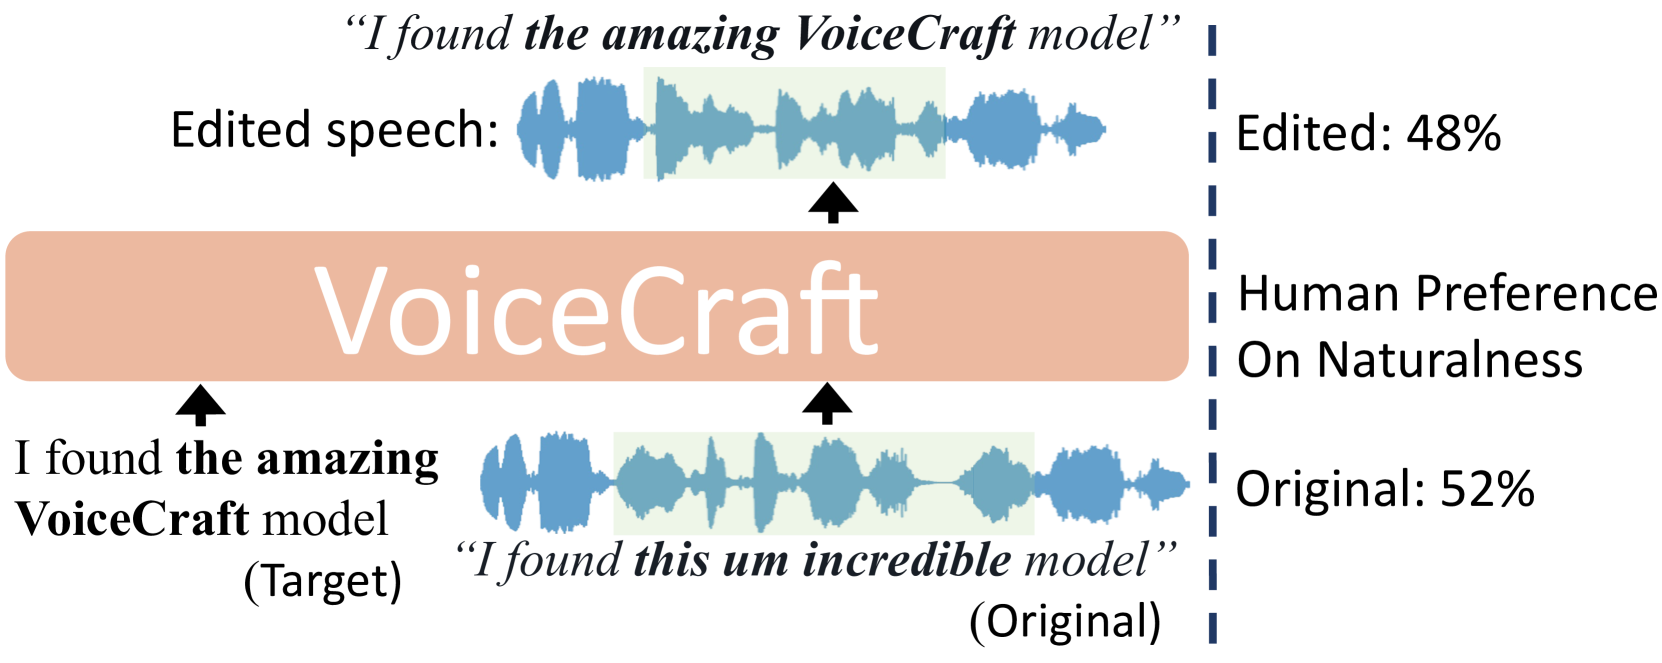 VoiceCraft: Zero-Shot Speech Editing and Text-to-Speech in the Wild